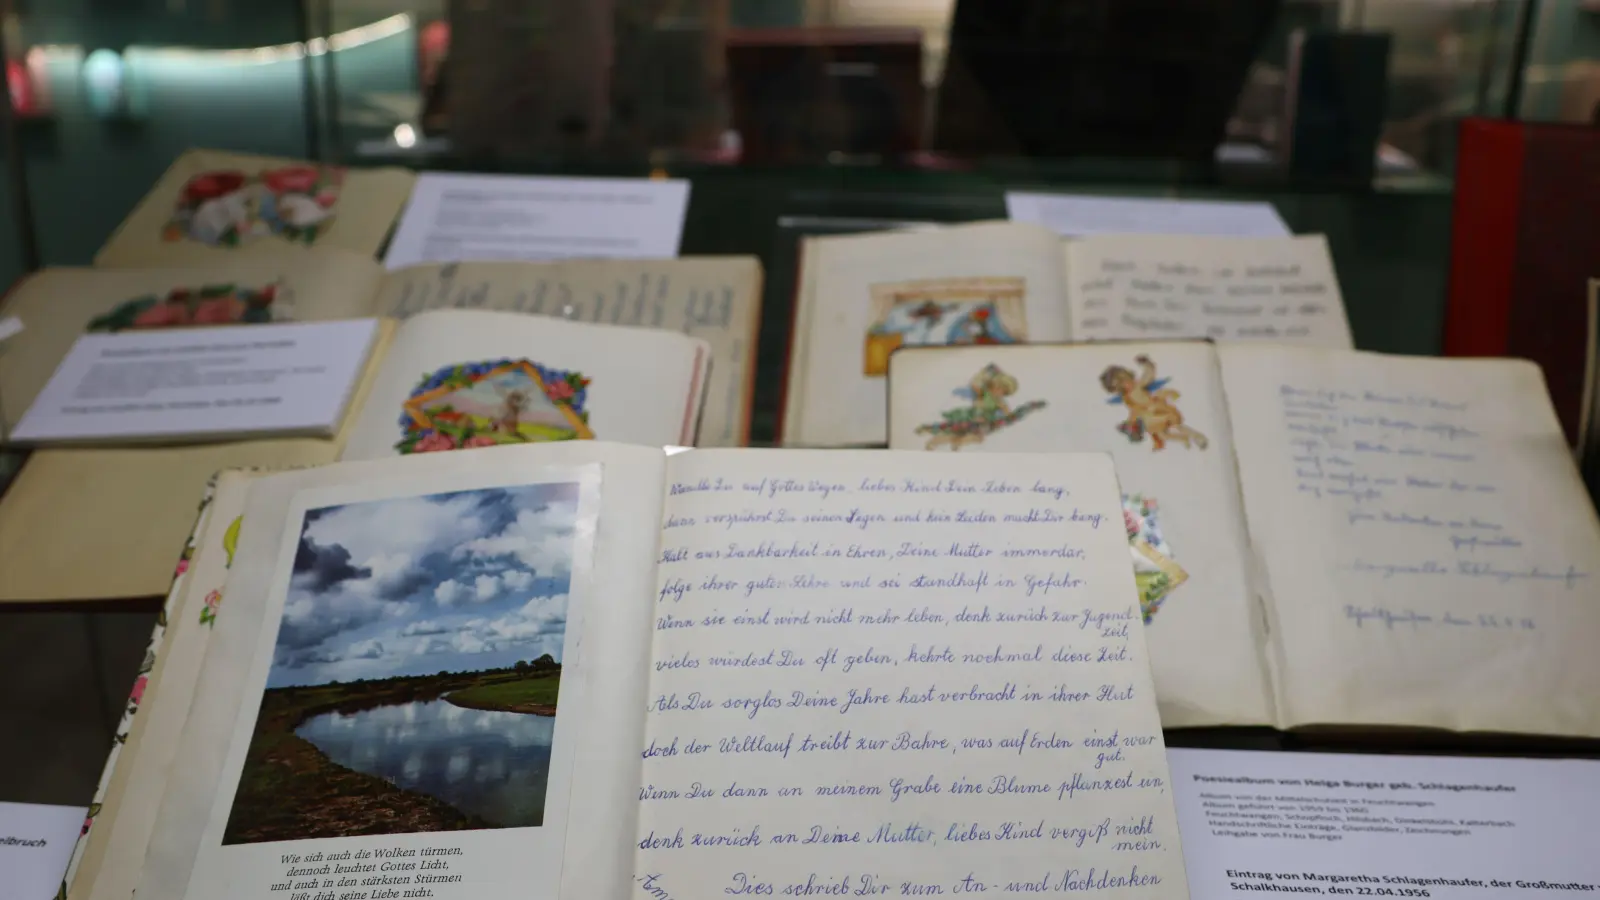 Poesiealben bewahren Erinnerungen an die Kindheit und Freundschaft. Im Fränkischen Museum sind viele Leih- gaben aus der Region zu sehen. (Foto: Martina Haas)